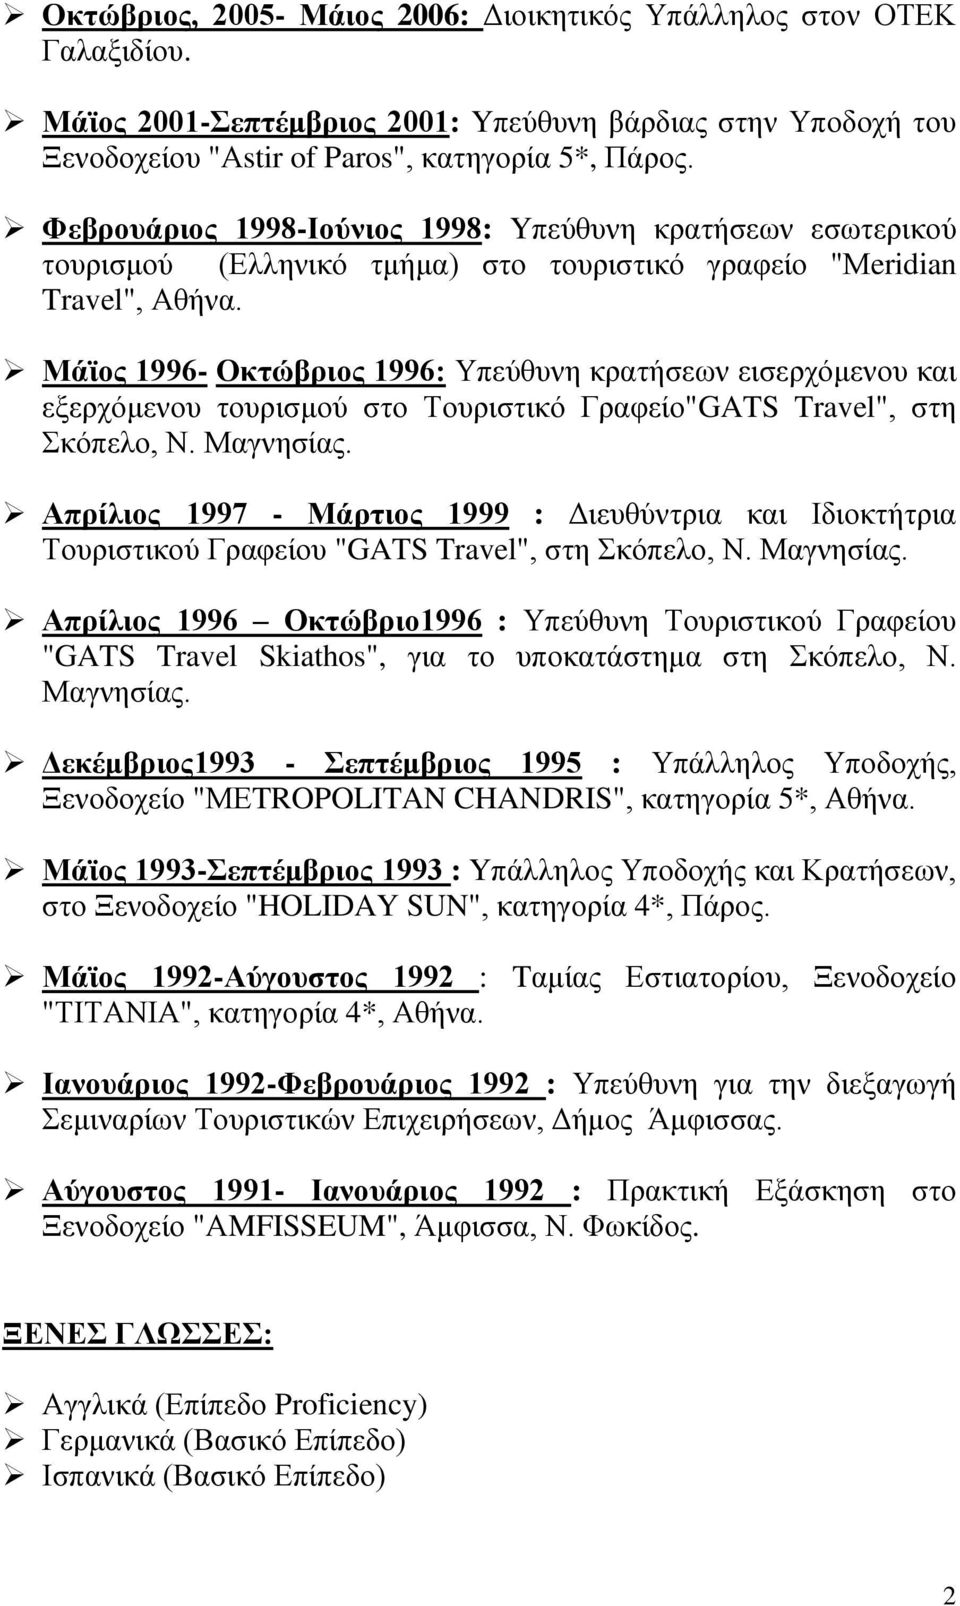 Μάϊος 1996- Οκτώβριος 1996: Υπεύθυνη κρατήσεων εισερχόμενου και εξερχόμενου τουρισμού στο Τουριστικό Γραφείο"GATS Travel", στη Σκόπελο, Ν. Μαγνησίας.